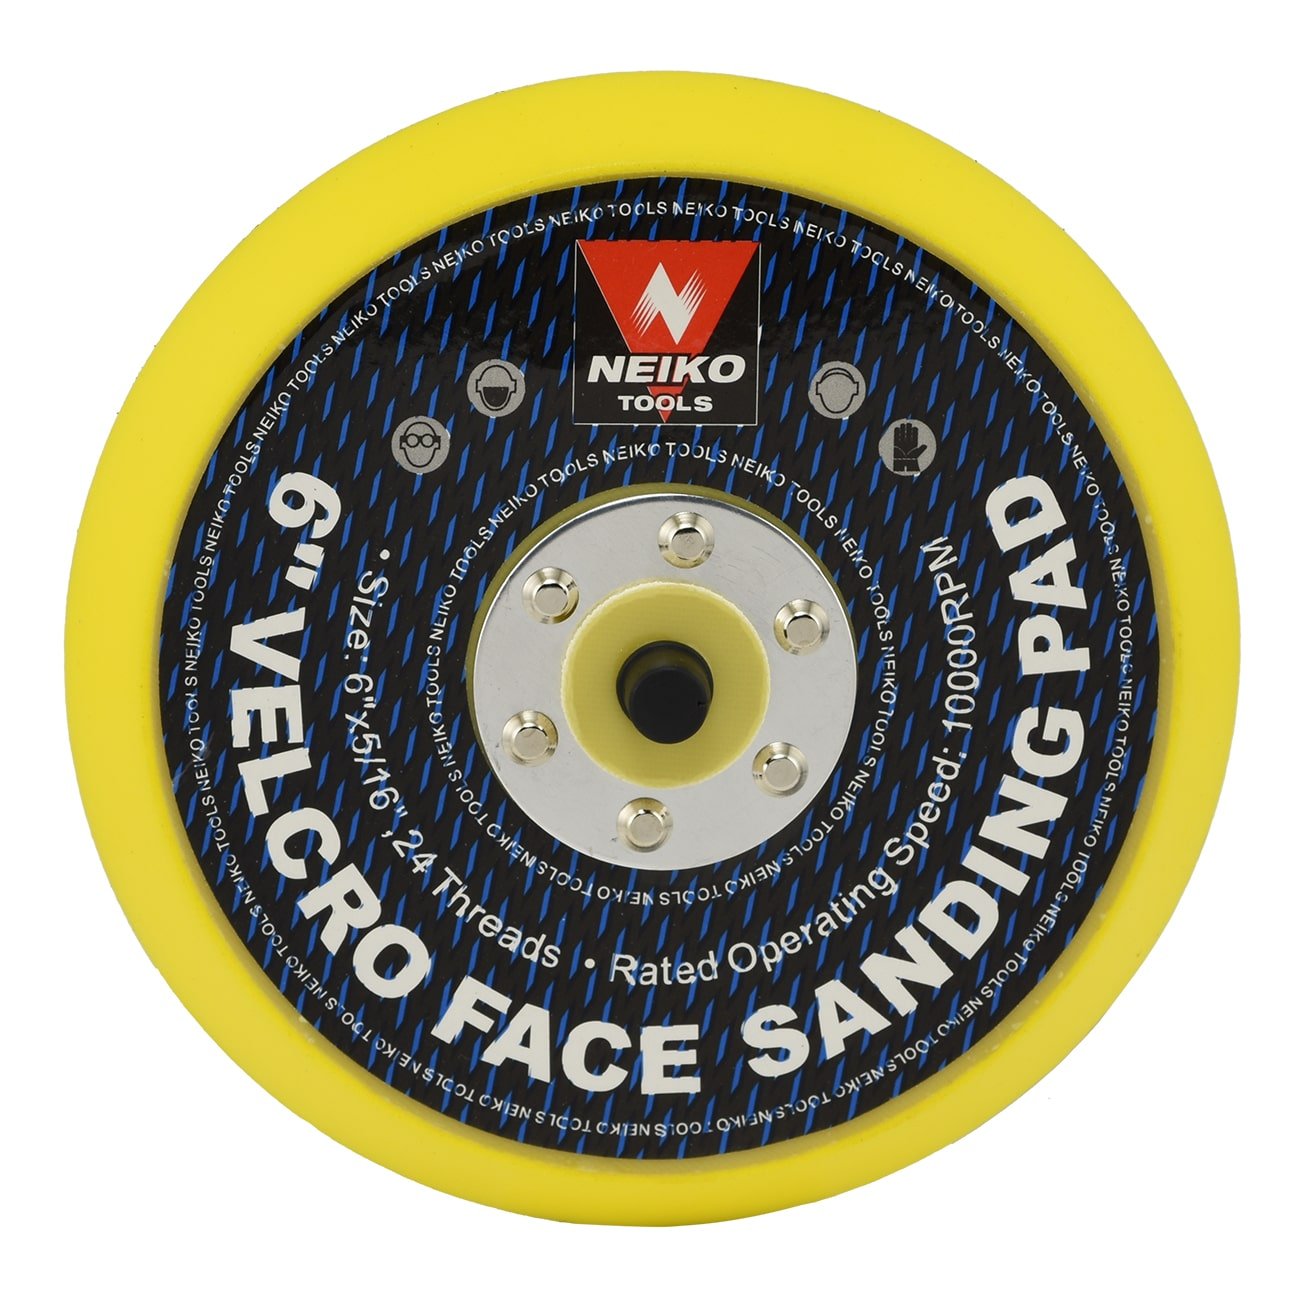 6" Sanding Pad Hook & Loop Face Air Vacuum Pneumatic Sander Grinder Tool